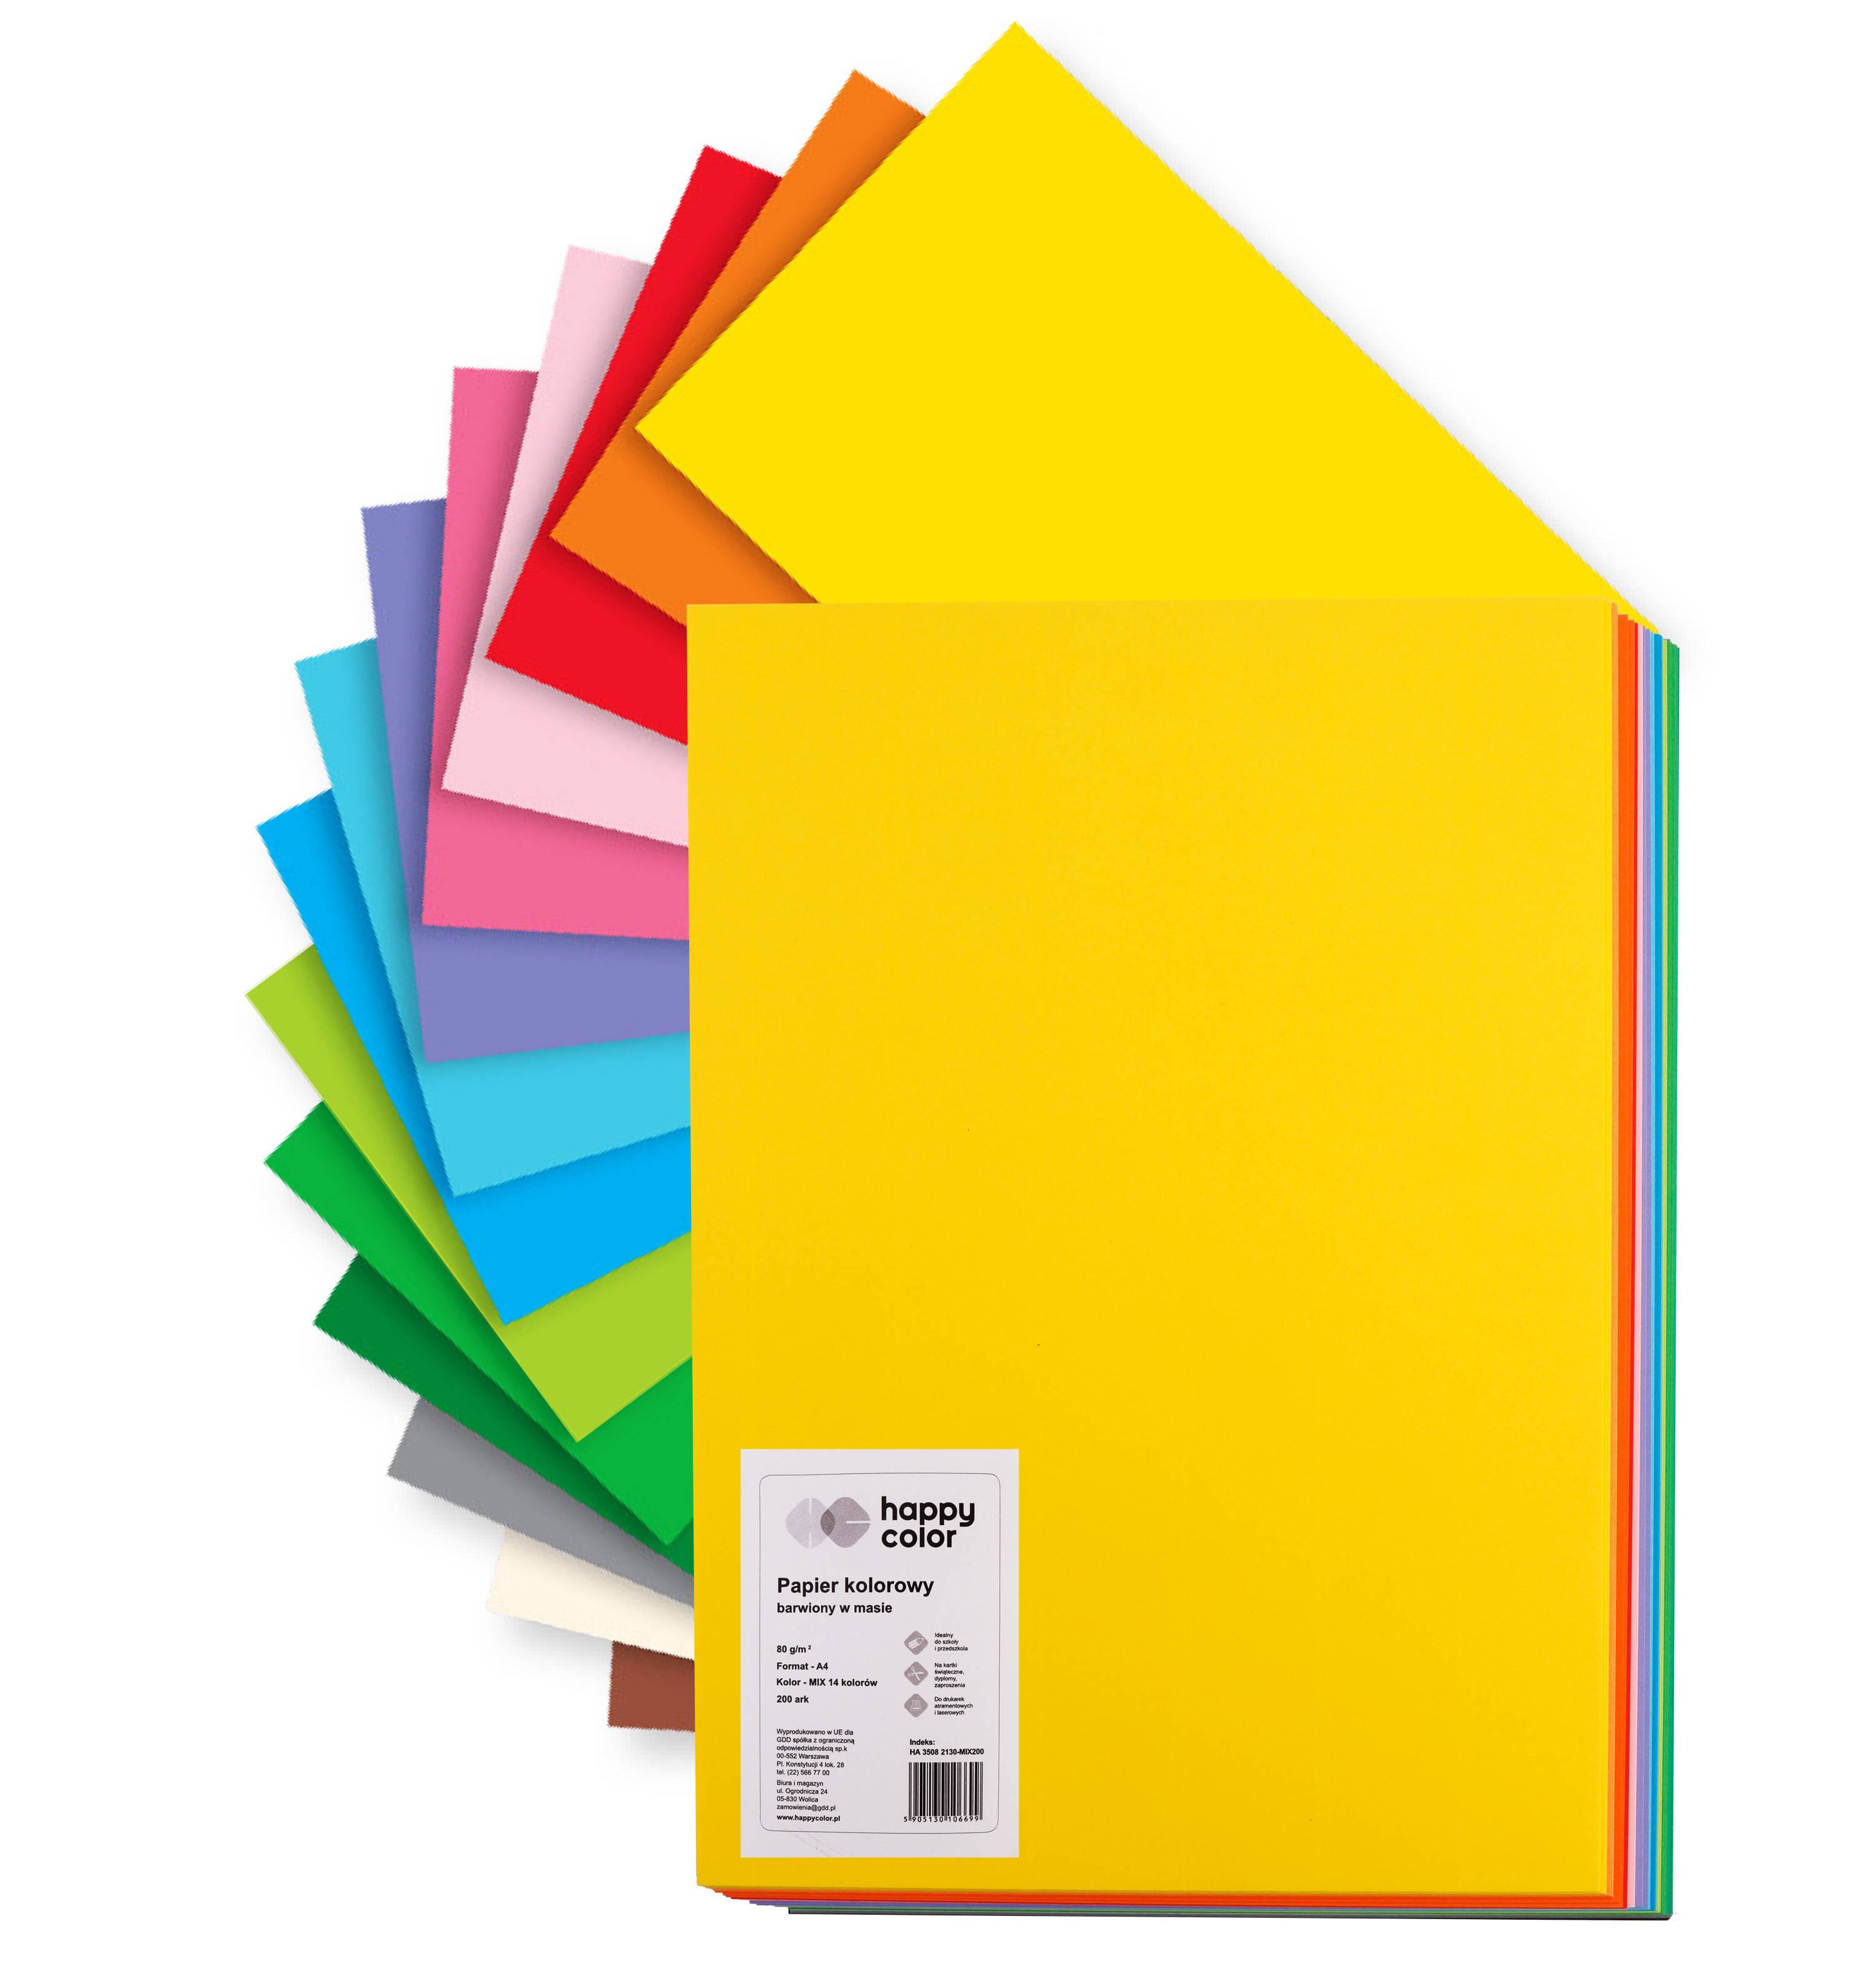  Artykuły papiernicze - Brystol B2, kartony kolorowe B2 50x70 cm❤️ 
 Bristol oraz  kolorowe kartony  przydają się w rozmaitych sytuacjach. To niezbędny element wszelkich zajęć plastycznych. Nadaje się m.in. do rysowania, wycinania oraz do prac manualnych. Dostępne są przeróżne kolory kartonów. Zarówno te niezwykle intensywne, jak i pastelowe. Można przebierać pomiędzy wieloma odcieniami czerwieni, żółci czy fioletu jak i tradycyjnych barw bieli i czerni. Jednolite  kartony  mają swoje grono zwolenników, często służą do tworzenia arcydzieł plastycznych na zajęciach dla dzieci w przedszkolu lub do budowania scenerii dla profesjonalistów w fotografii. Pojęcie kartonu i brystolu są często używane zamiennie – zwykle  brystol papier  oznacza produkt sprzedawany w dużych arkuszach papieru. Mówiąc  papier techniczny , możemy mieć na myśli np. karton lub brystol, ale też  papier techniczny  sprzedawany w formie  bloku technicznego . 
   
  Kolorowe kartony  dają nieograniczoną możliwość tworzenia prac plastycznych, kartek okolicznościowych, plakatów, opakowań, itp. w szkole, domu oraz biurze. Szeroka gama obejmuje intensywne i pastelowe kolory. Kartony w formacie A4 i A3 pakowane w ryzy lub sprzedawane pojedyńczo. 
 Co to jest brystol i do czego może posłużyć? 
  Papier Brystol  to  kolorowy karton w arkuszach , który wytwarza się poprzez sklejenie ze sobą pod dużym ciśnieniem kilku warstw cieńszych arkuszy papieru. Dzięki temu otrzymany  kolorowy karton  papieru jest stosunkowo sztywny (gramatura takiego papieru wynosi od 170 do 300 g/m²) oraz stosunkowo mocny i trwały. Nadaje się doskonale na zajęcia do prac plastycznych dla wszystkich osób w różnym wieku. Jest doskonale odporne na wielokrotne wycieranie gumką lub ostrzem. 
 Zapraszamy do skorzystania z naszych usług. Stacjonarna hurtownia papiernicza mieści się na terenie miasta Warszawa. Sprzedaż prowadzimy również w ramach sklepu papierniczego online, proponując konkurencyjne ceny, rabaty oraz programy lojalnościowe dla naszych klientów. W naszym sklepie online zaopatrzysz swoją placówkę szkolną w doskonałej jakości brystole i kolorowe papiery do prac manualnych, zaś w sklapie stacjonarnym, będziesz mógł dokonać zakupu brystolu w pojedyńczych arkuszach kolorowego papieru. 
   
 Keyword: brystol papier, brystol kolorowy, arkusz brystolu, papier brystol, kolorowy karton, karton rysunkowy, brystol papieru 
   